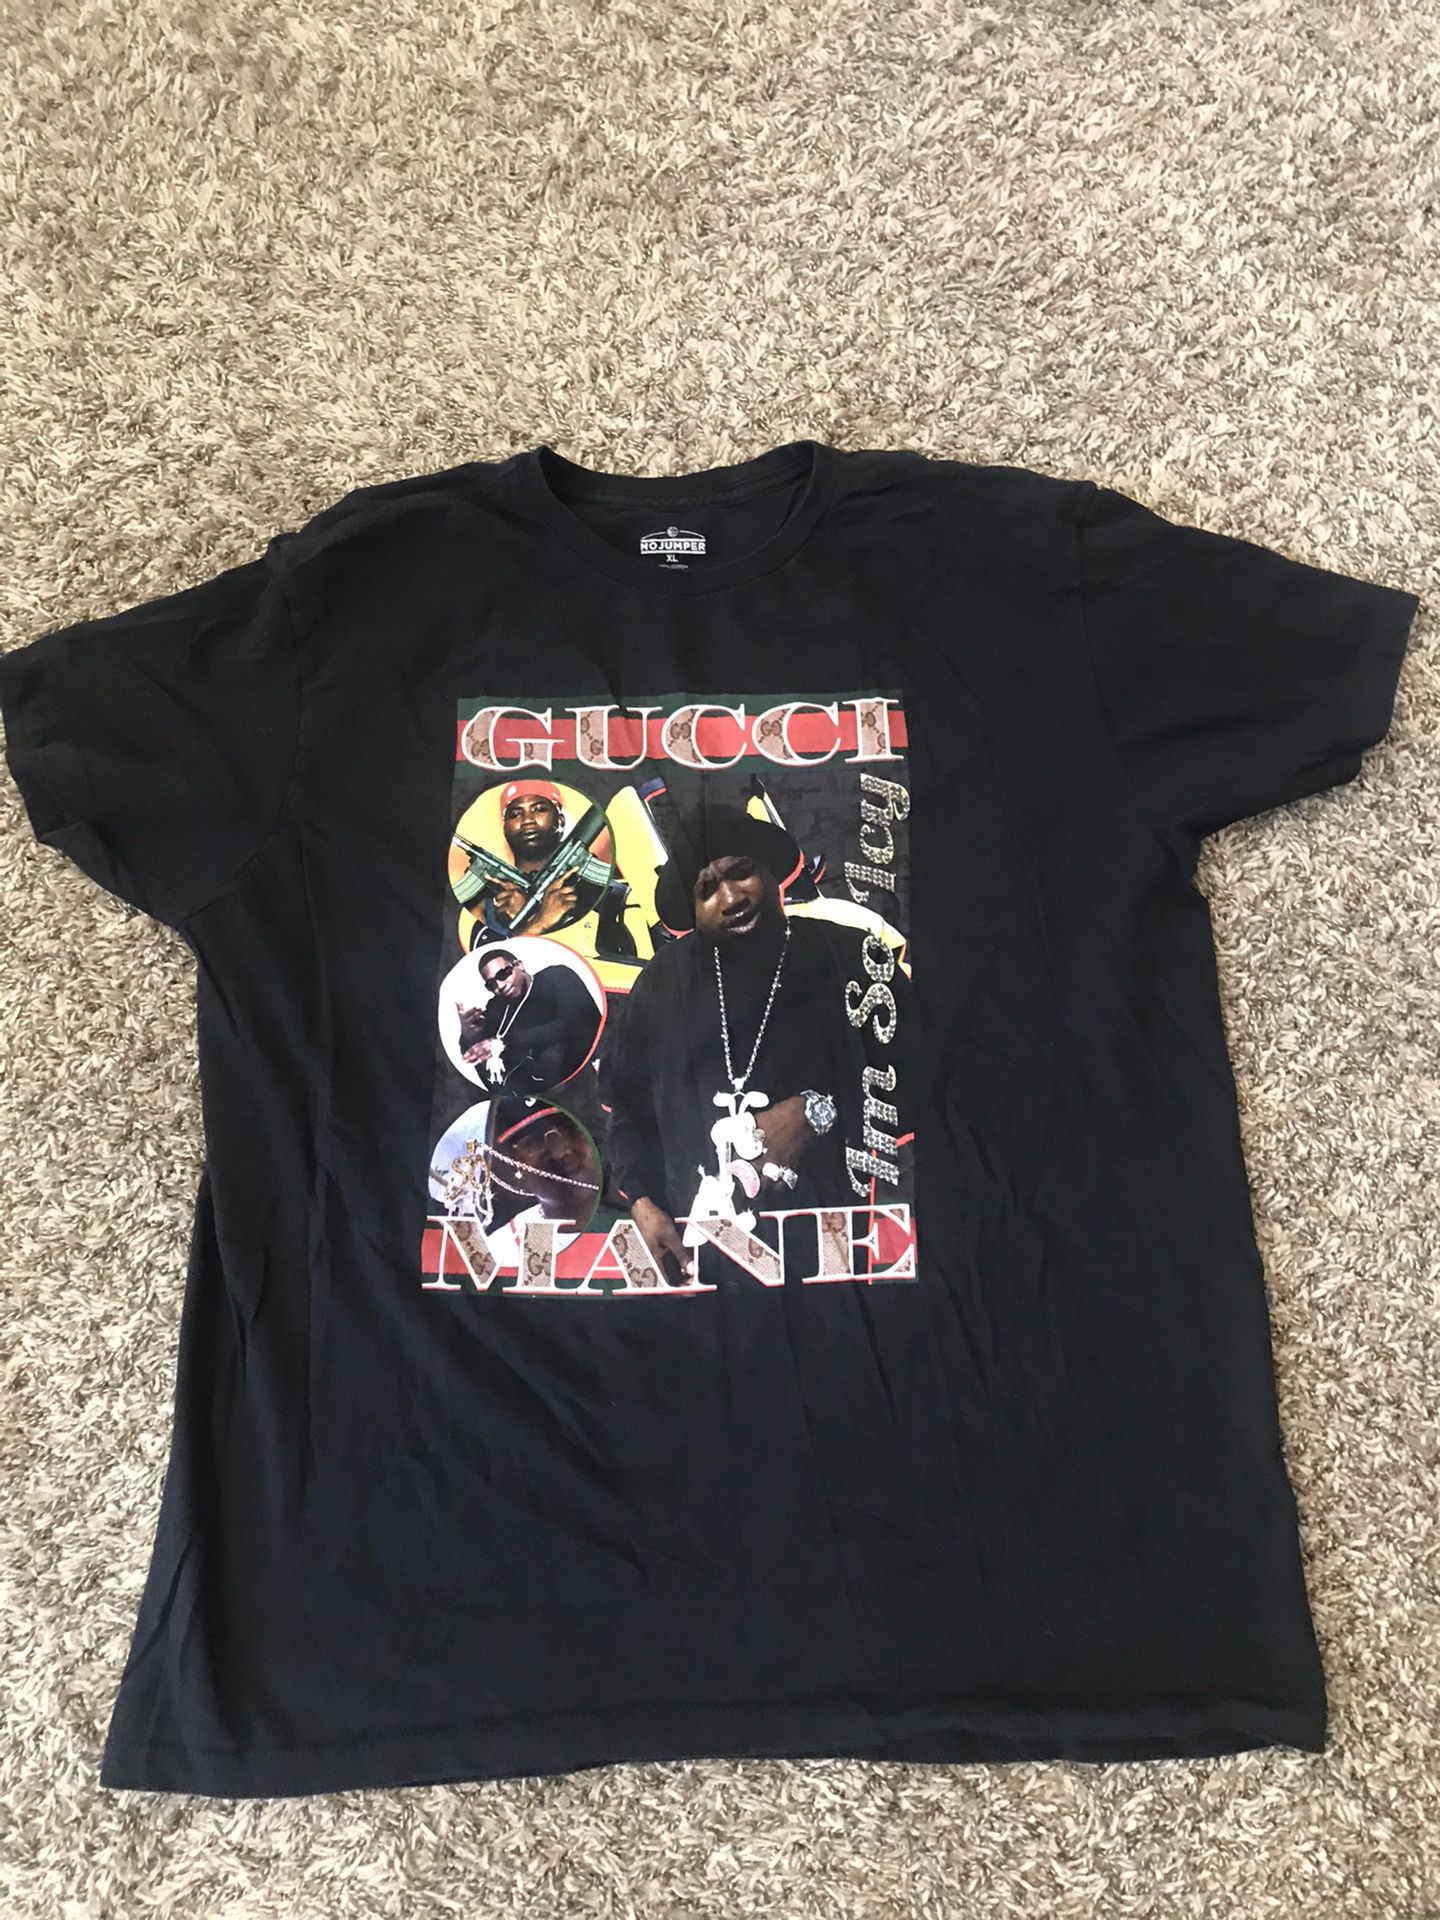 Gucci Mane T shirt size men’s XL